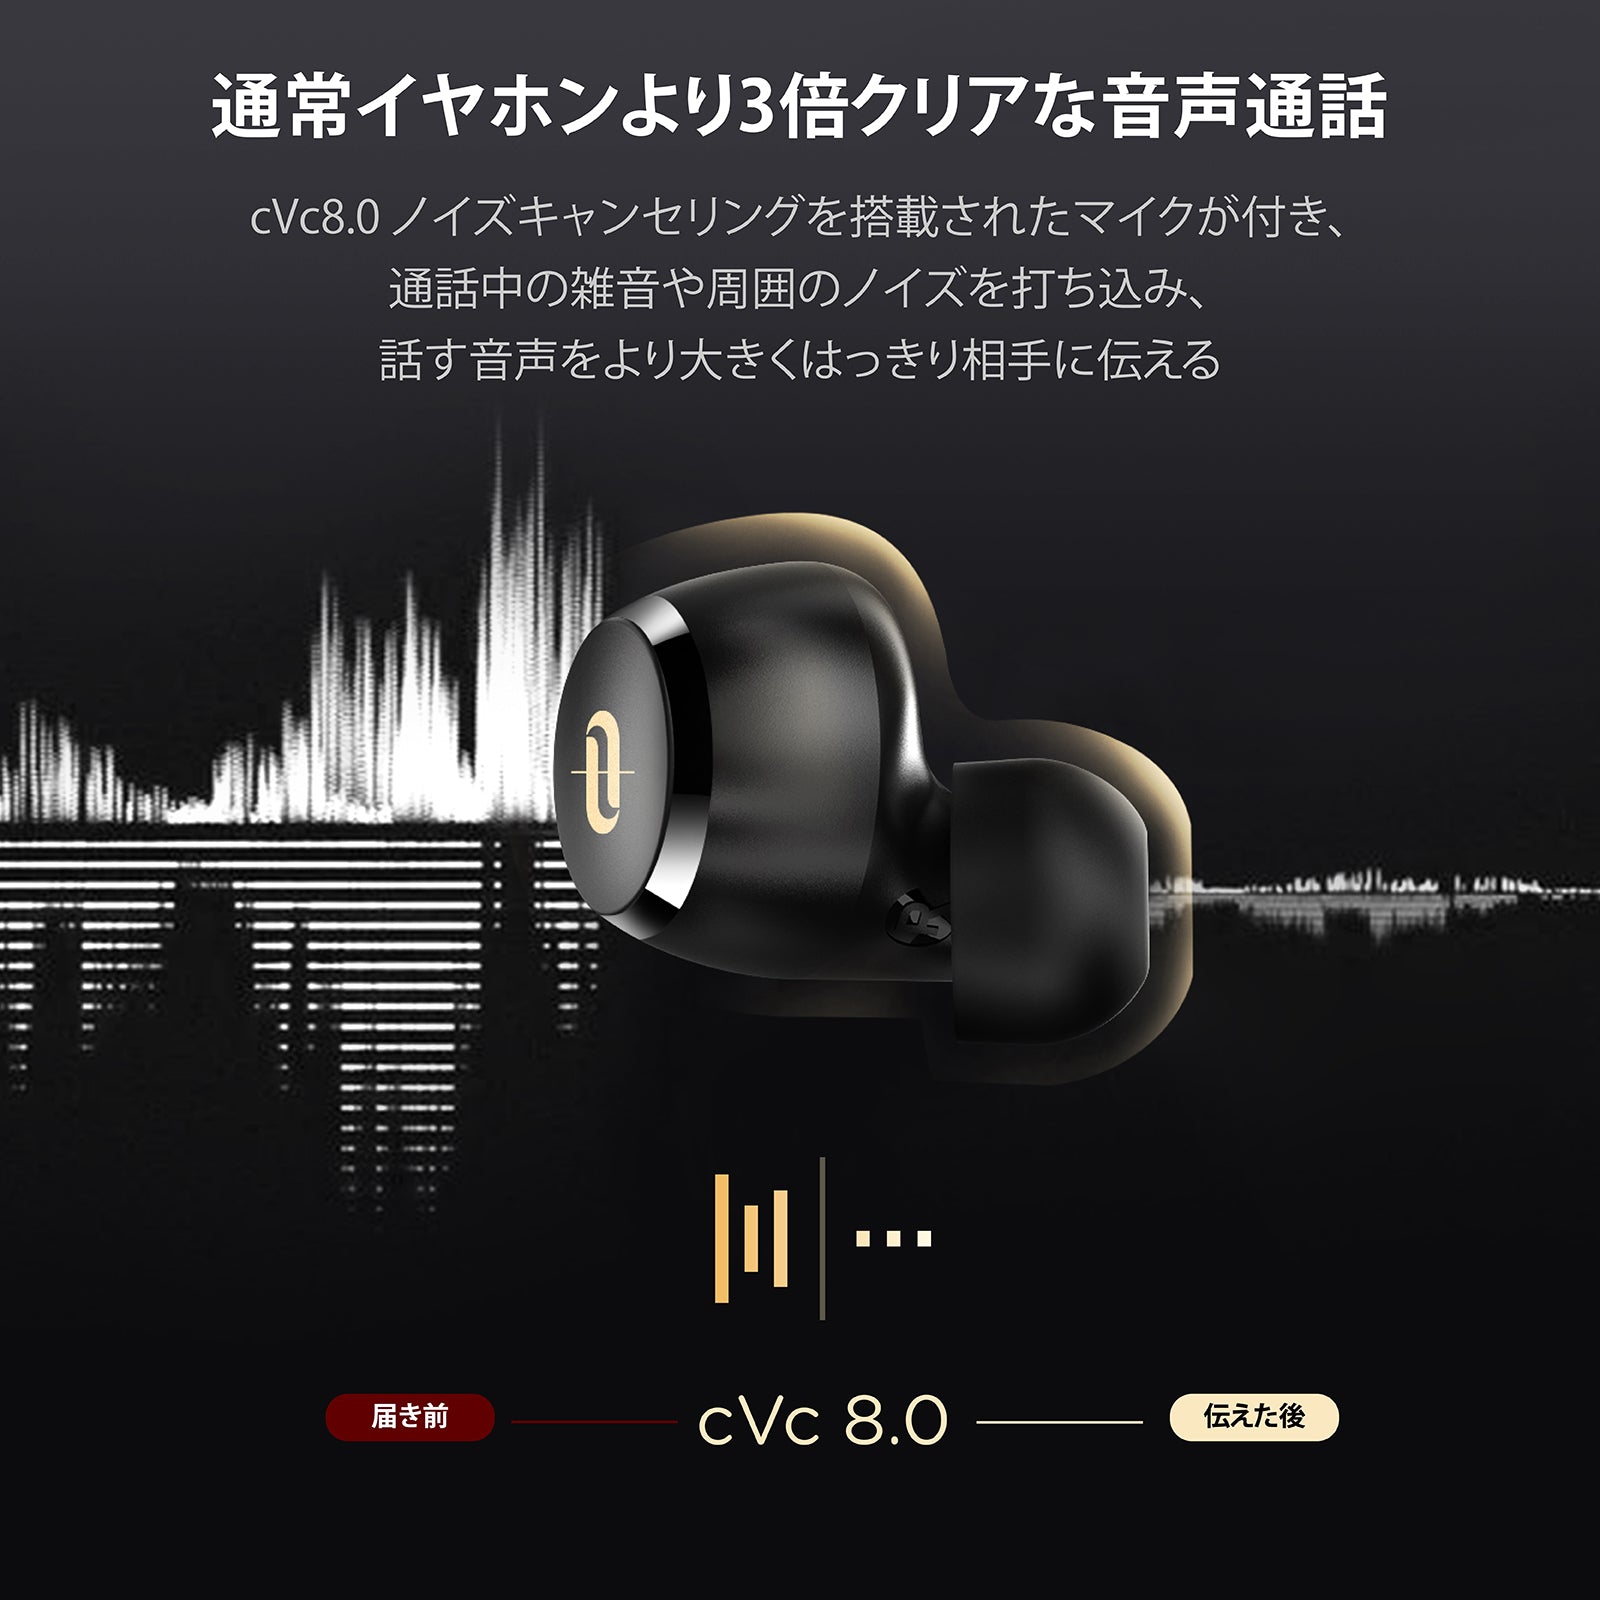 cVc8.0ノイズキャンセリングを搭載されたマイクが付き、通話中の雑音や周囲のノイズを打ち込み、話す音声をより大きくはっきり相手に伝える